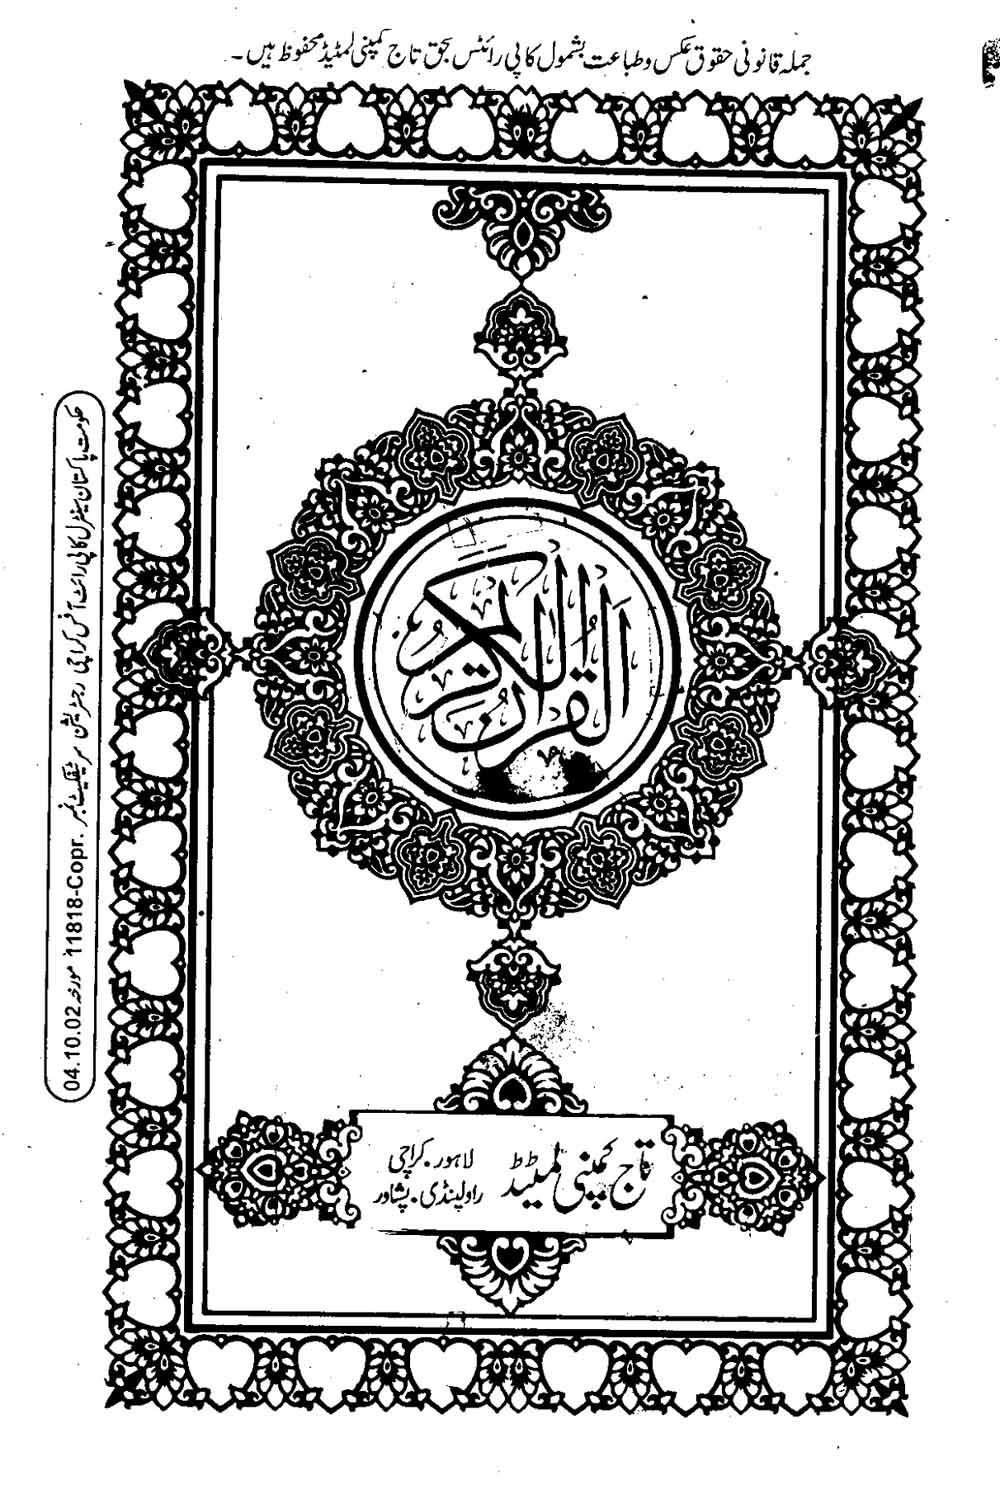 Read 16 Lines Al Quran Taj Company Part 1 Page No 2, Practice Quran